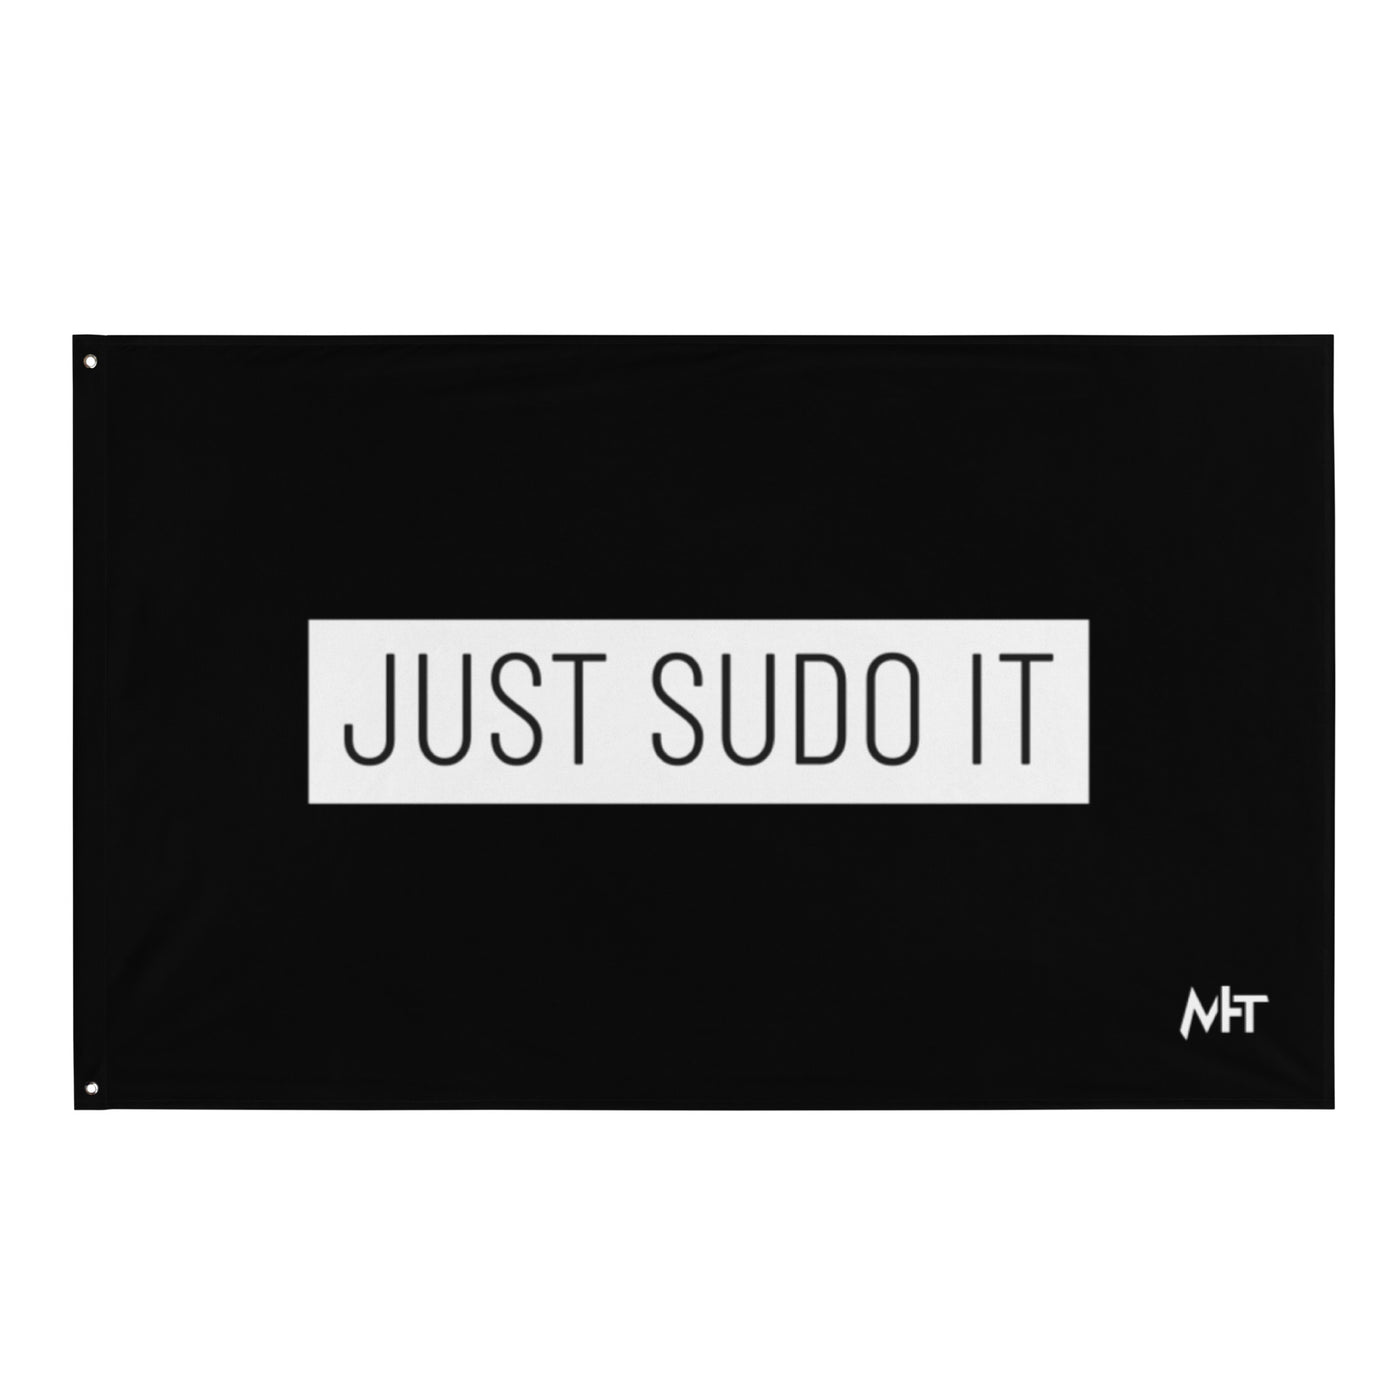 Just sudo it - Flag